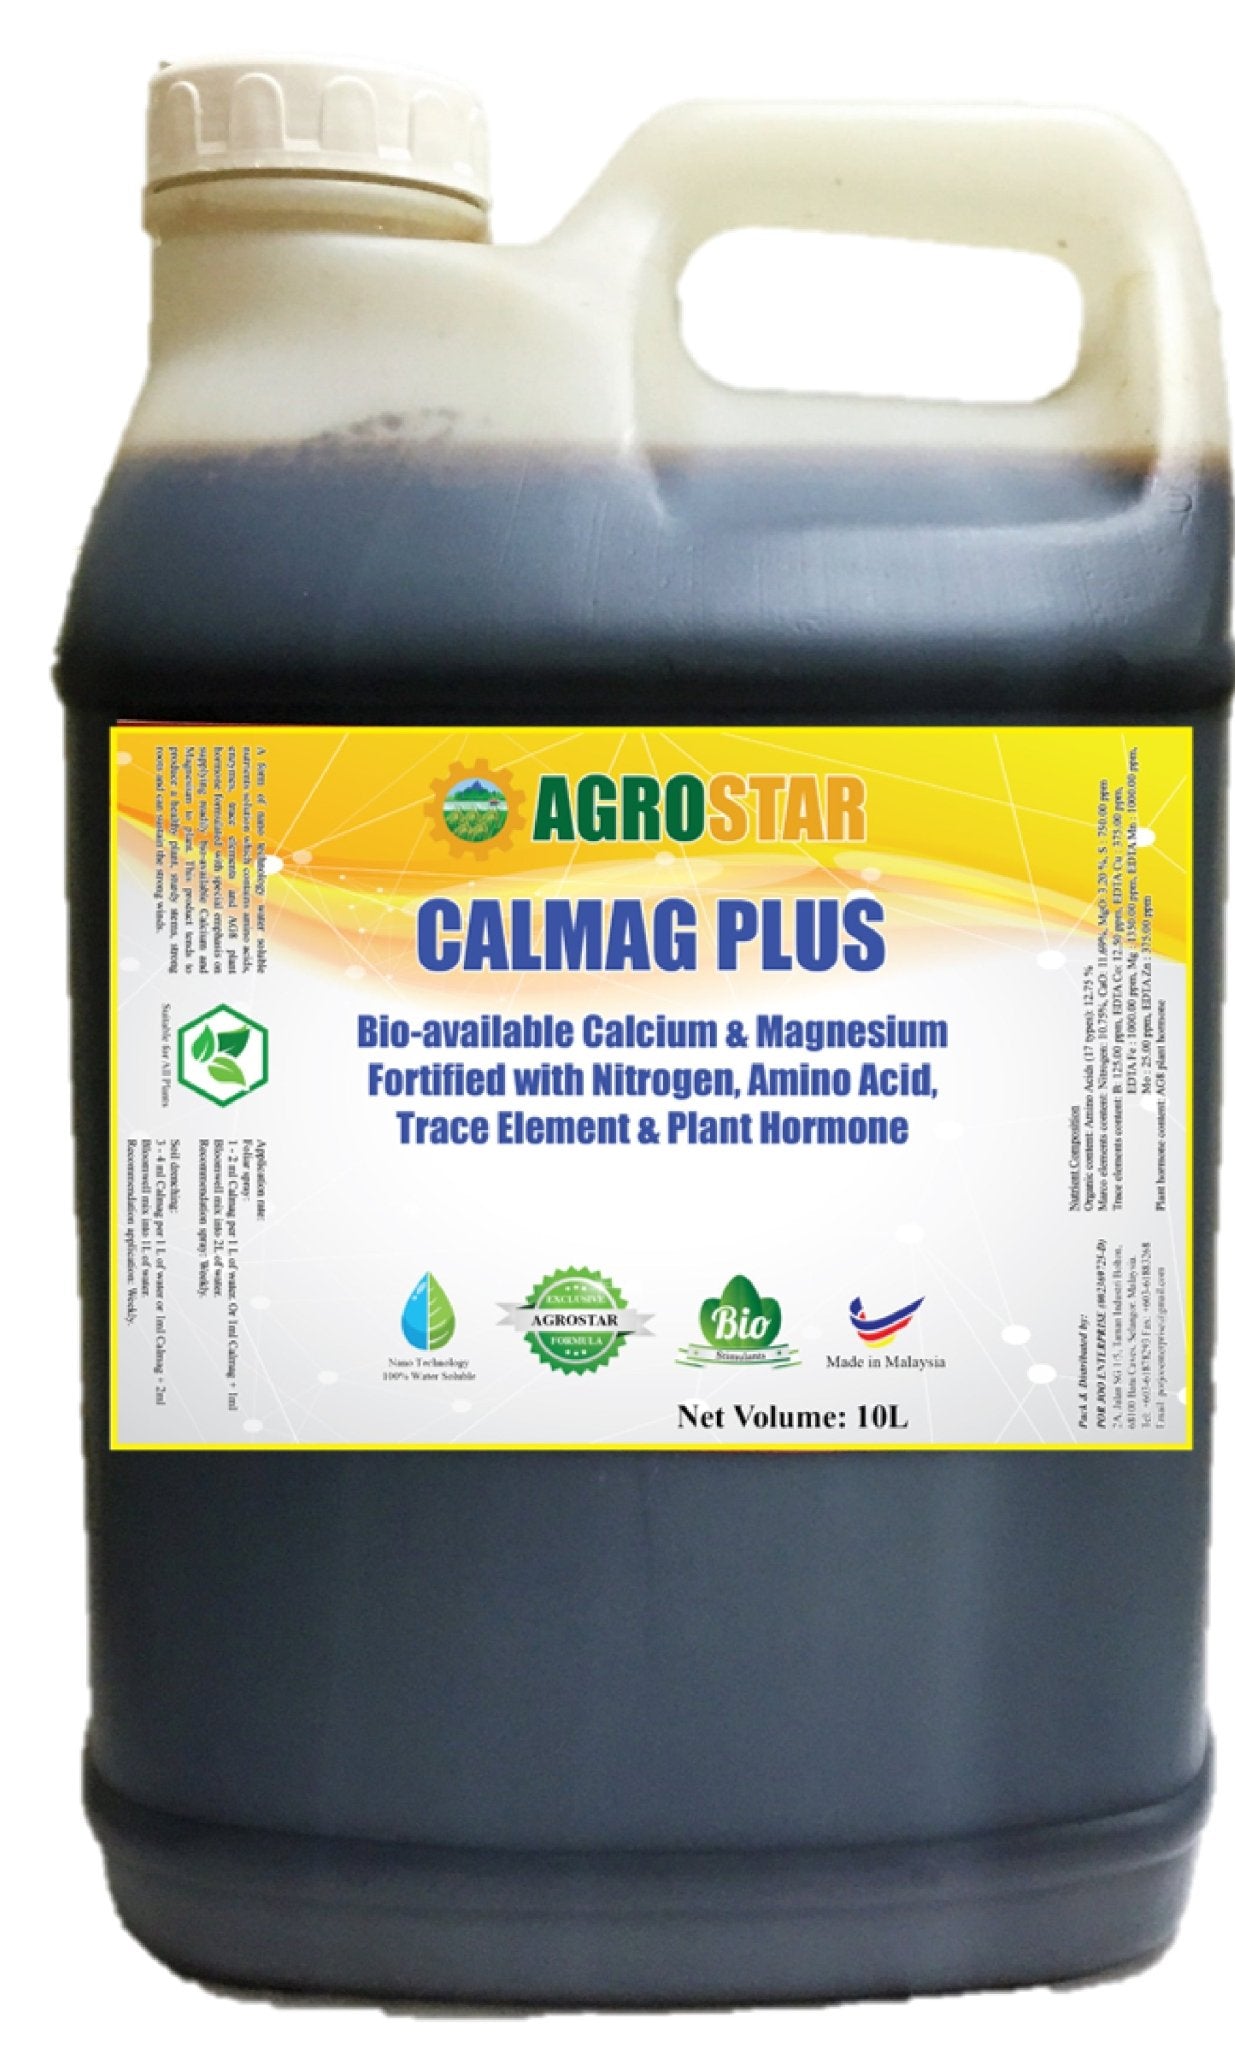 Agrostar Calmag Plus - Farm Doktor